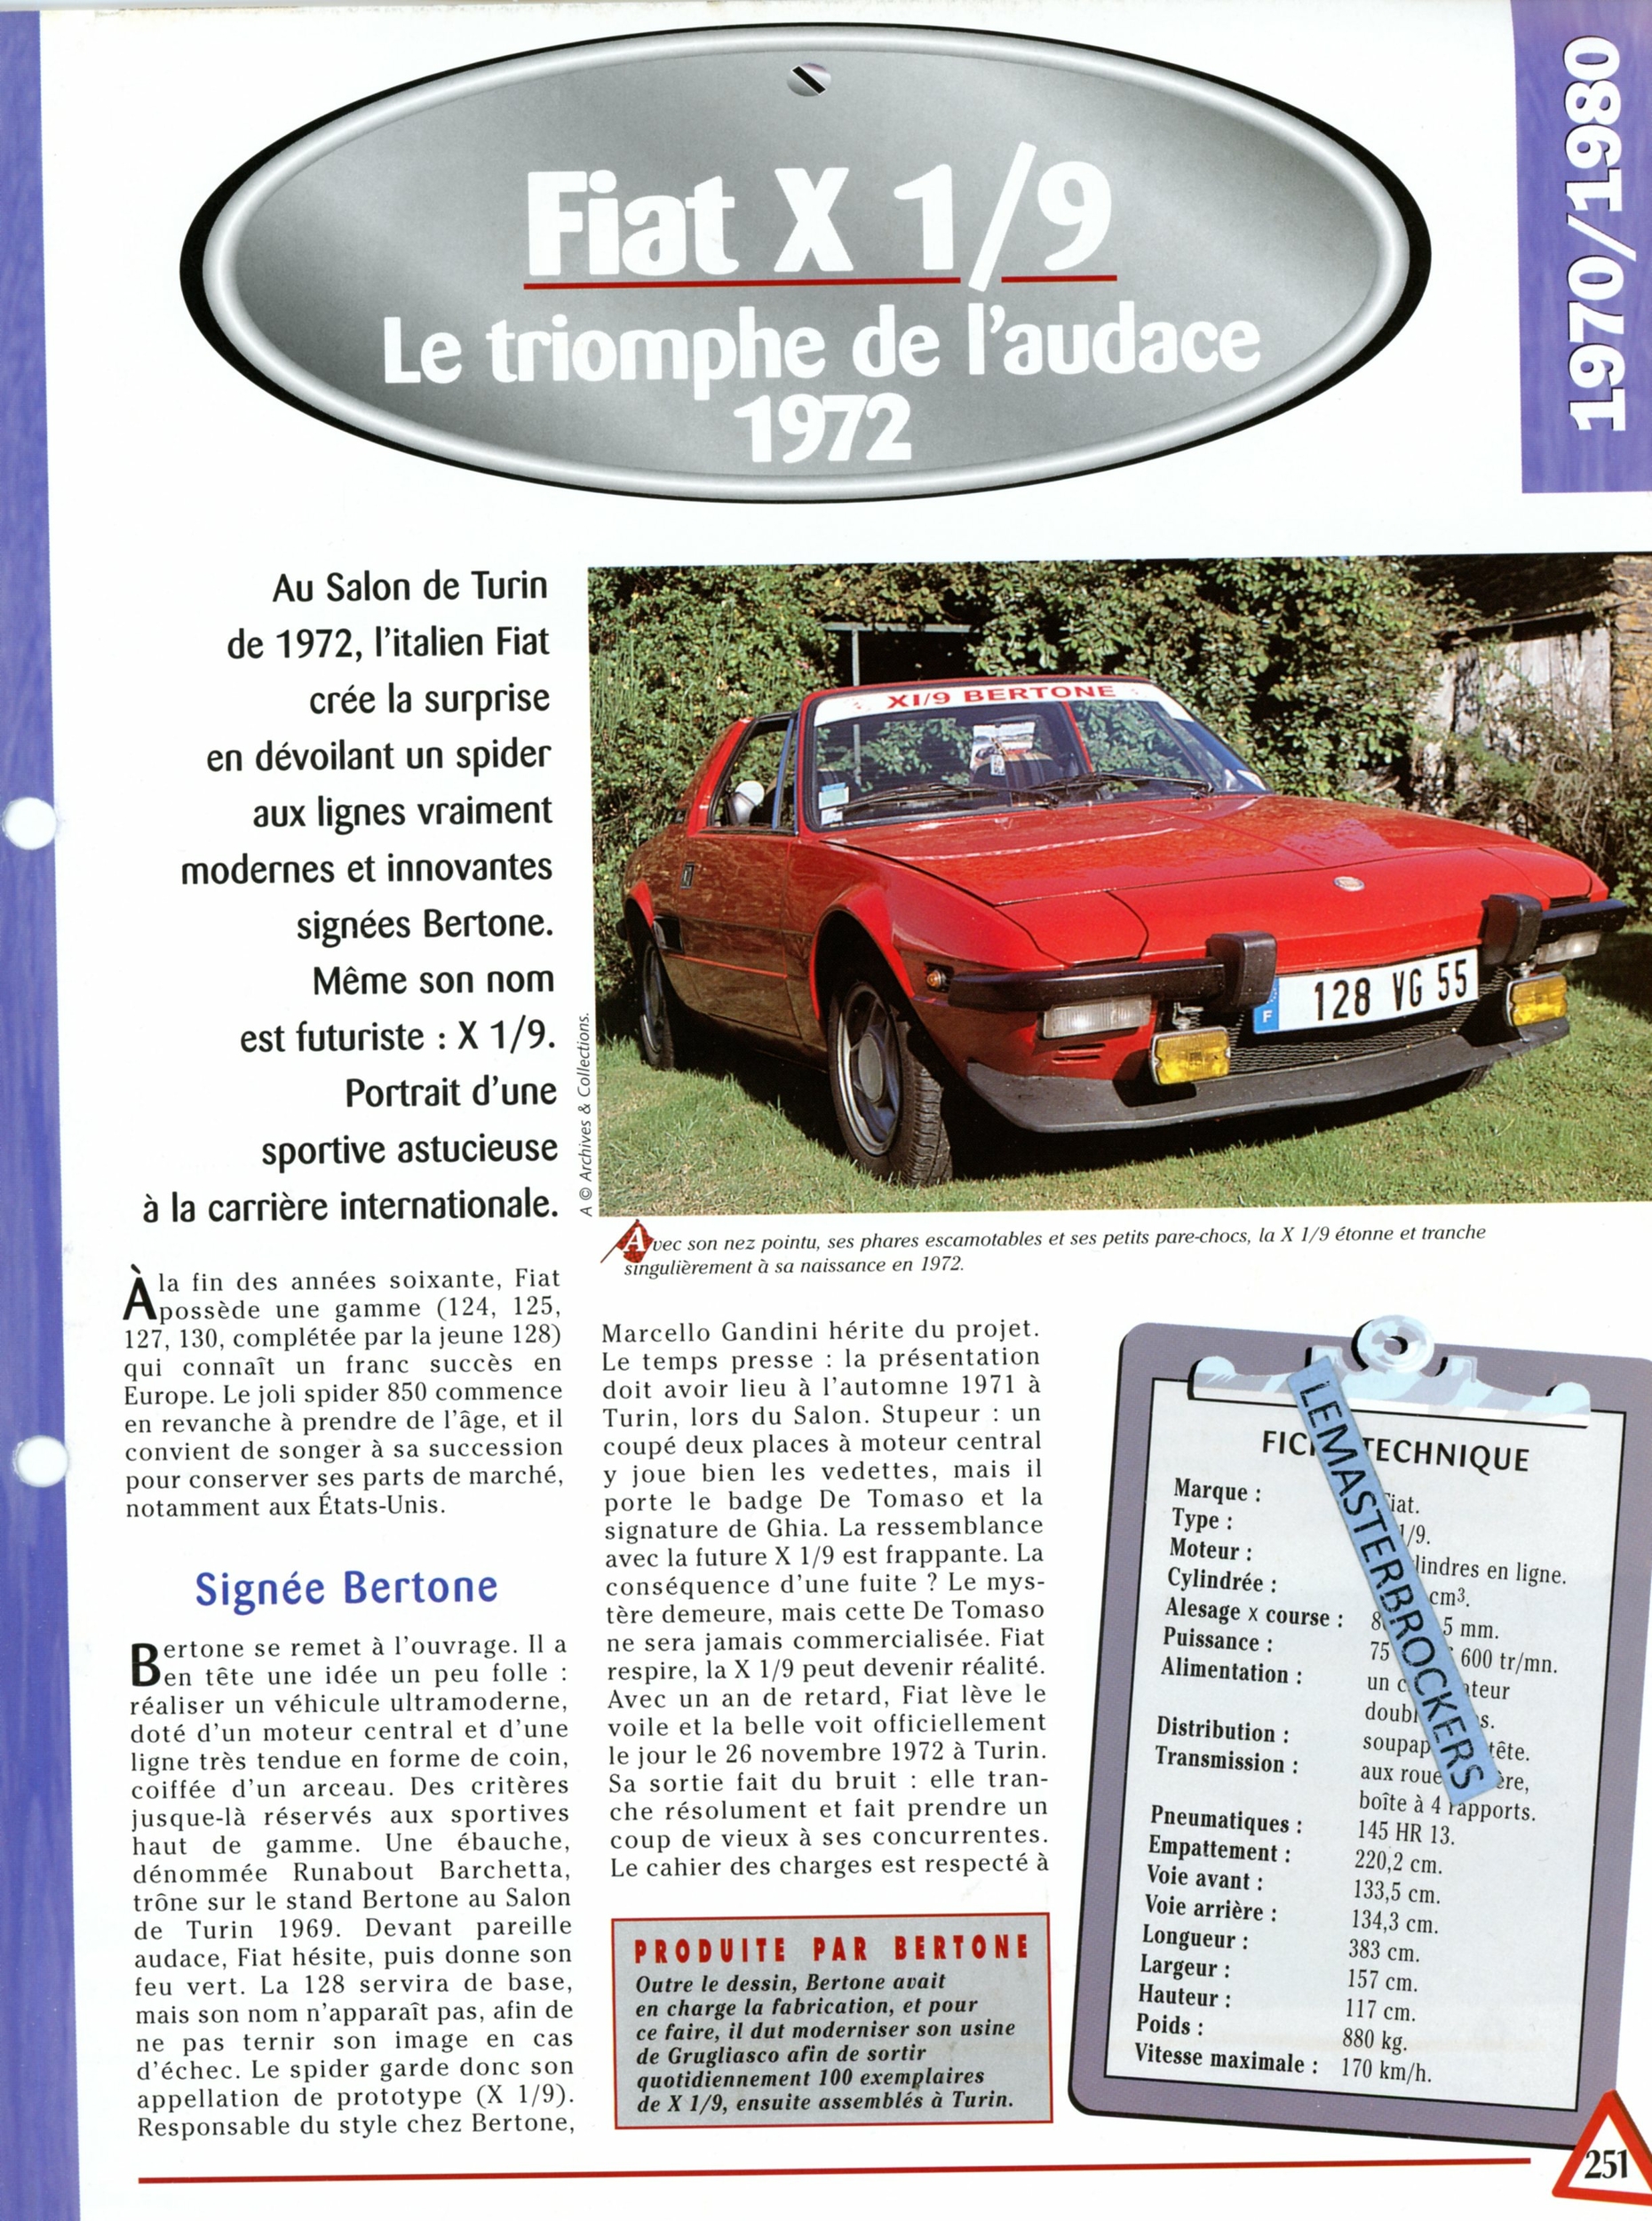 FIAT-X-1/9-1972-FICHE-AUTO-FICHE-TECHNIQUE-VOITURE-LEMASTERBROCKERS